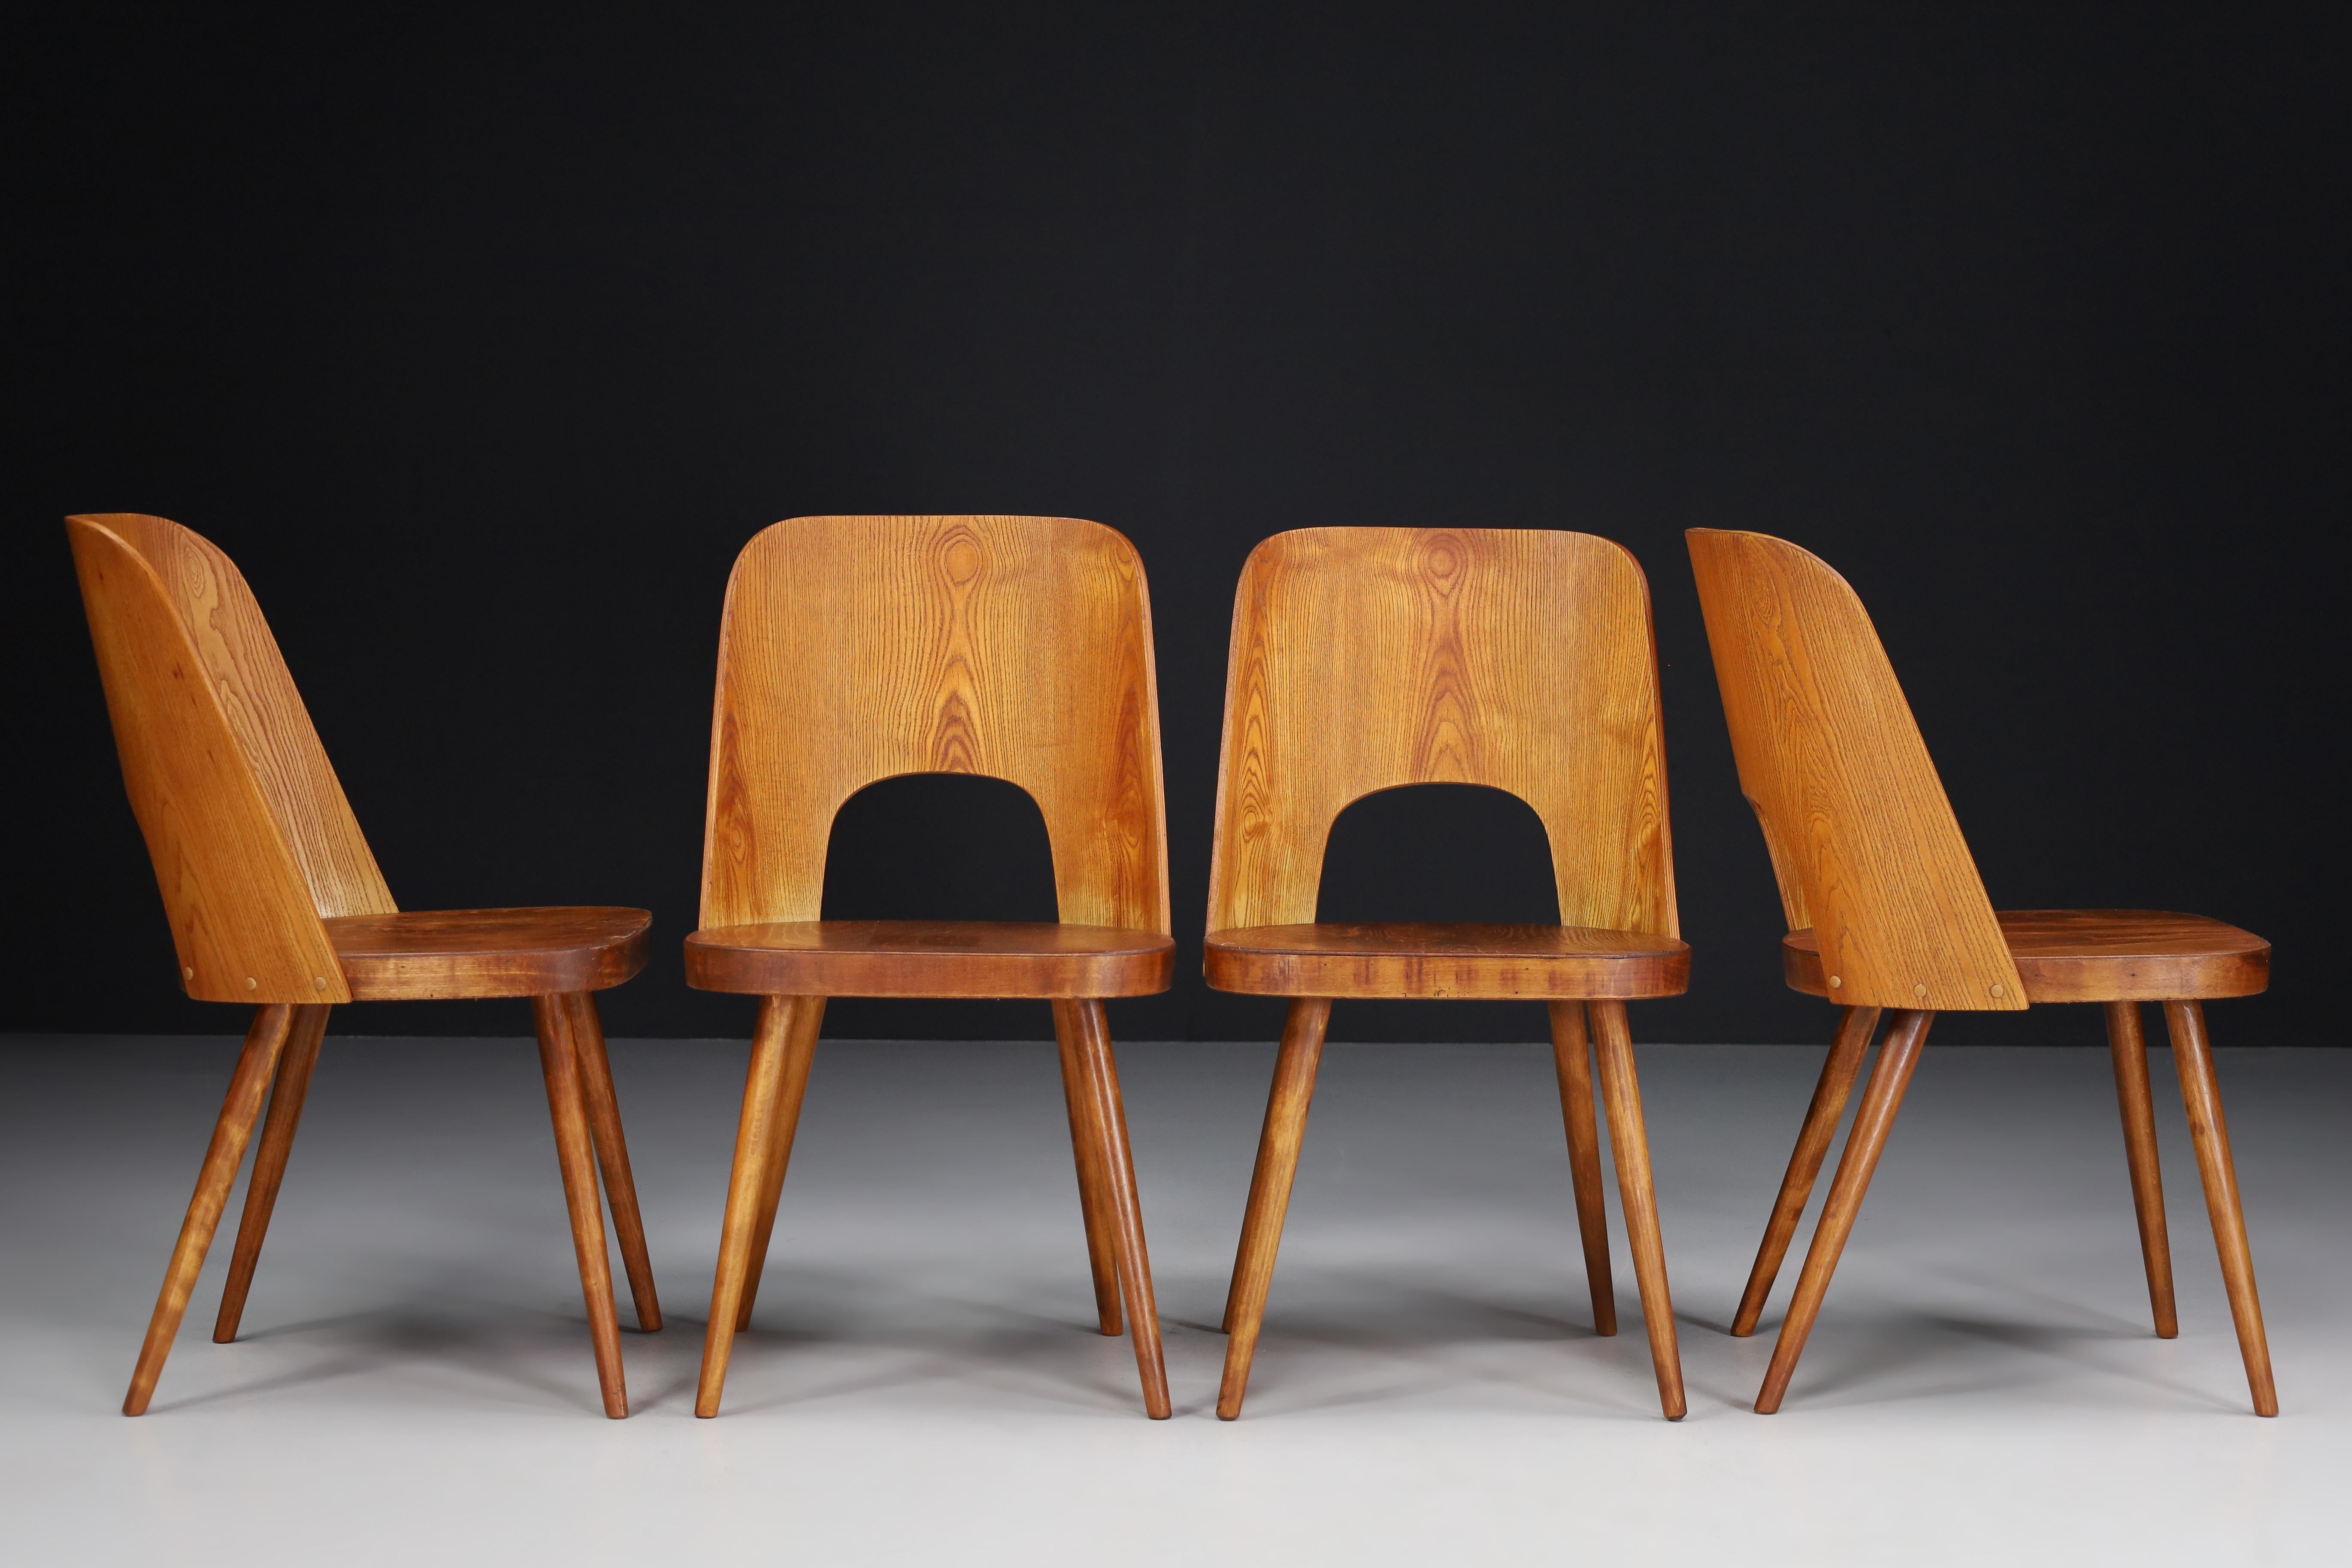 Juego de cuatro sillas Oswald Haerdtl, años 50 

El diseñador austriaco Oswald Haerdtl diseñó un raro juego de cuatro sillas que Ton (Thonet) fabricó en la antigua Checoslovaquia en la década de 1950. Sillas características de madera de fresno,